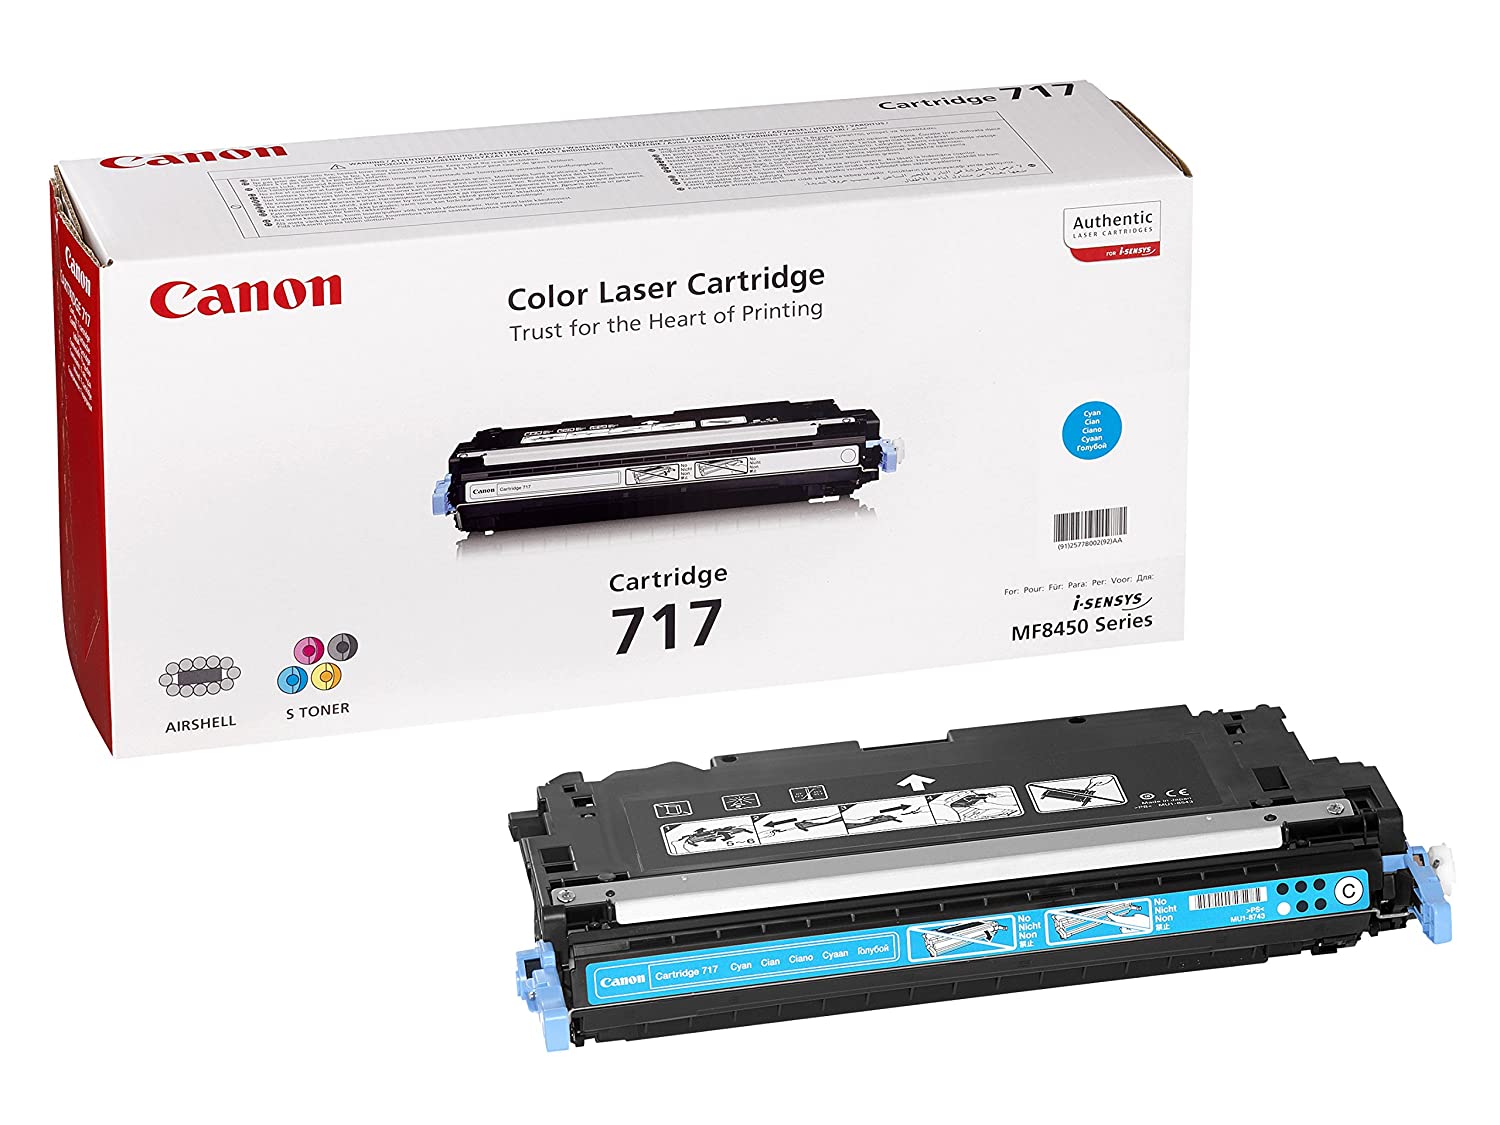 کارتریج تونر مشکی 717 کانن از تونرهای لیزری شرکت " CANON " میباشد. هر کارتریج دارای قطعات ، درام کارتریج ،چیپست کارتریج ، مگنت کارتریج و فوم کارتریج است .